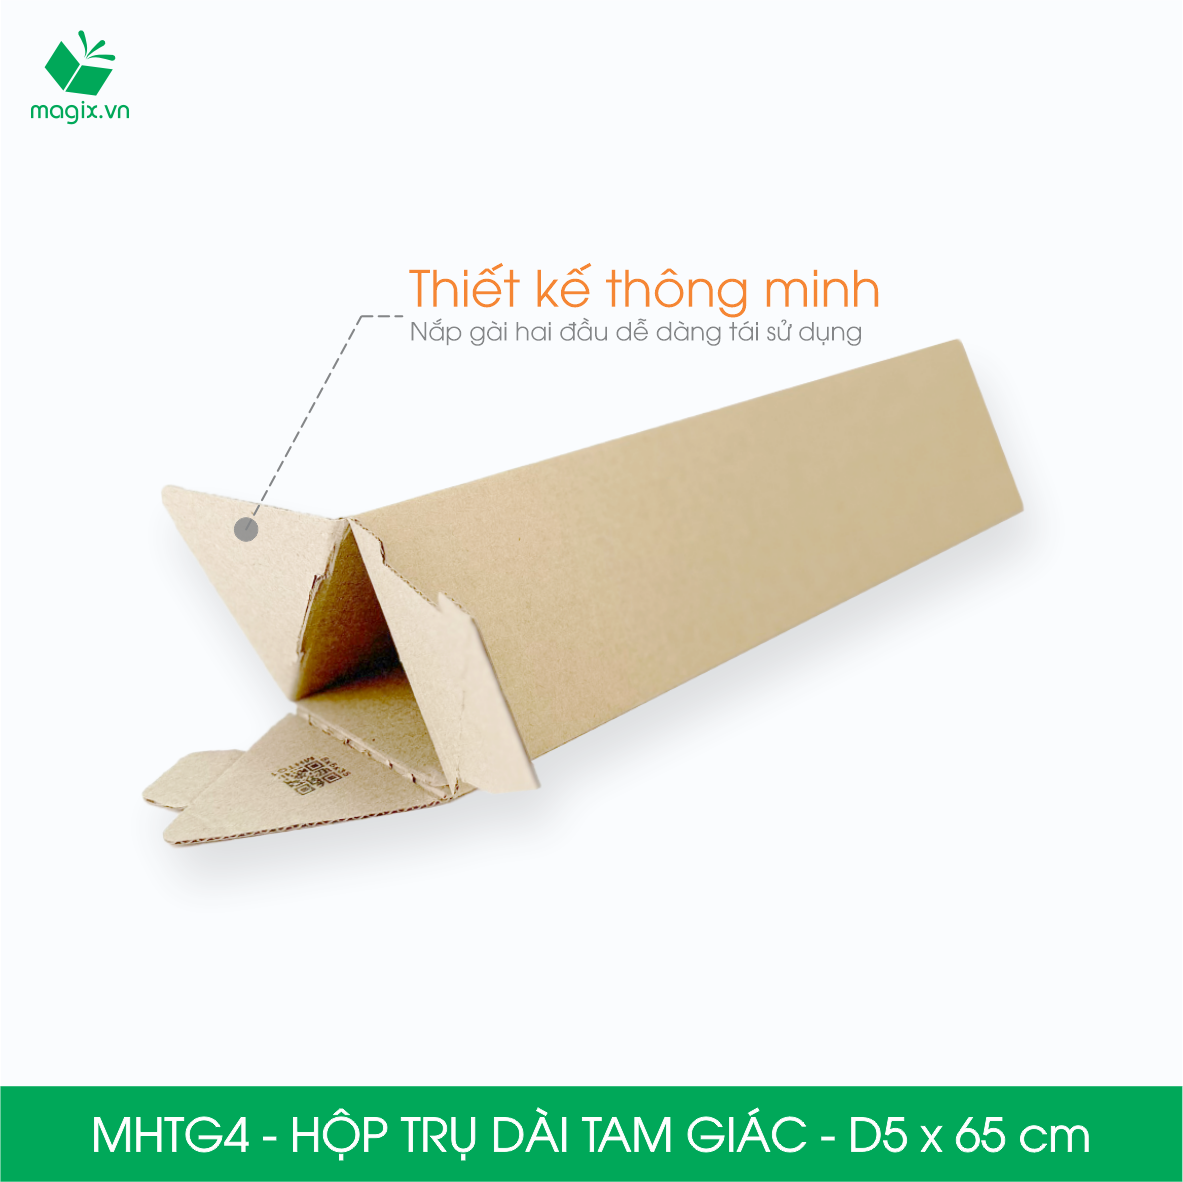 MHTG4 - D5x65 cm - 10 Hộp trụ dài tam giác thay thế ống giấy - Hộp carton đóng gói hàng